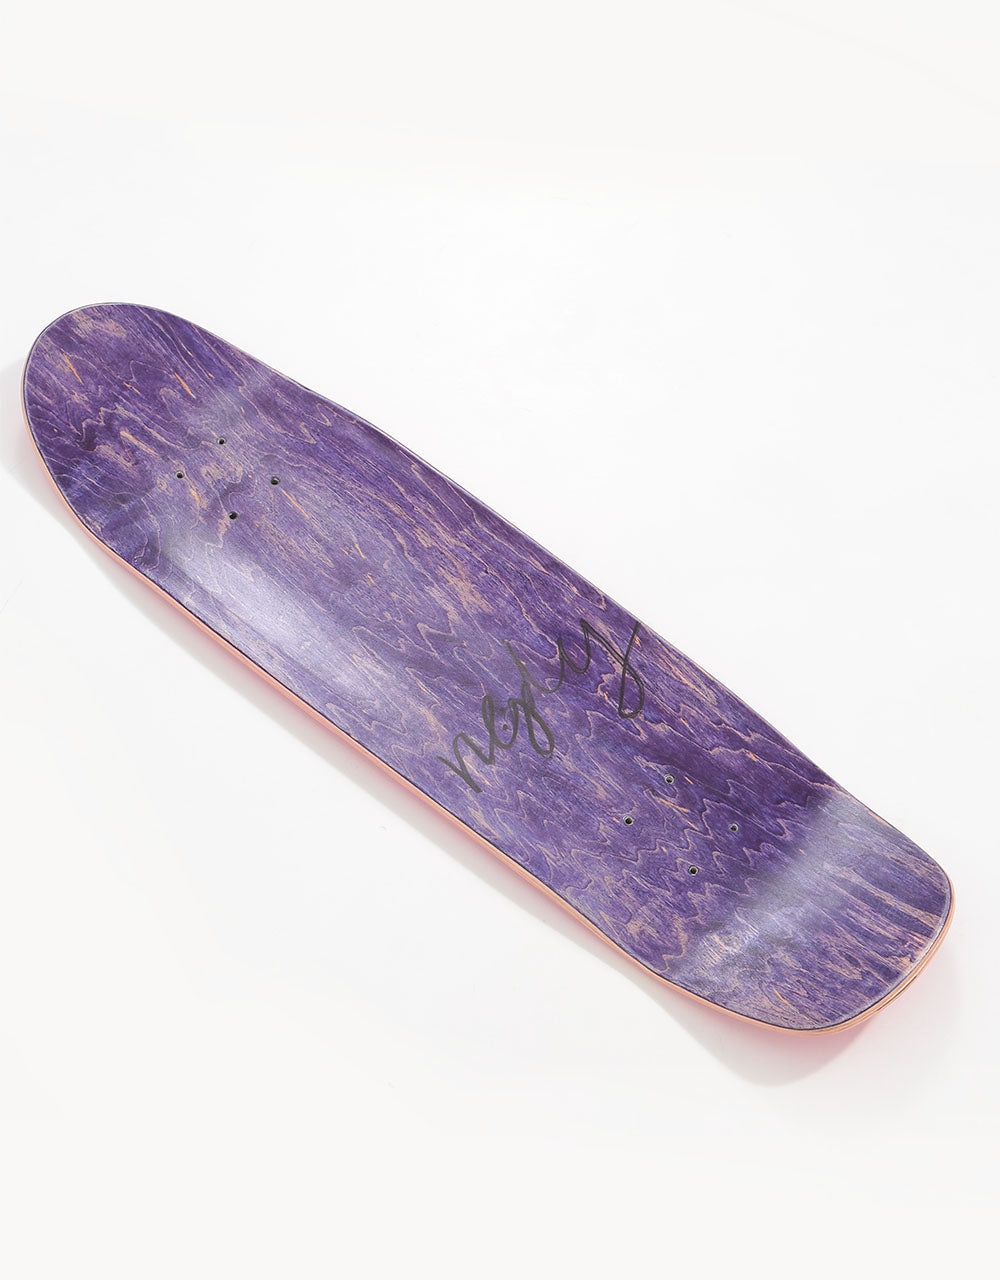 re:ply Oak Skateboard Deck - 8" x 30"